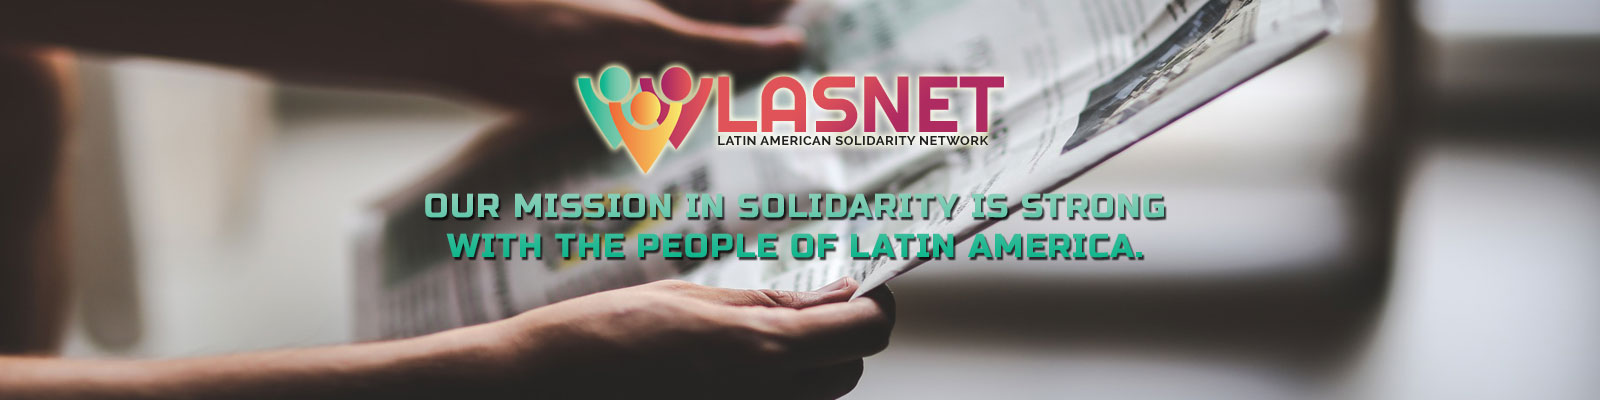 Latin American Solidarity Network